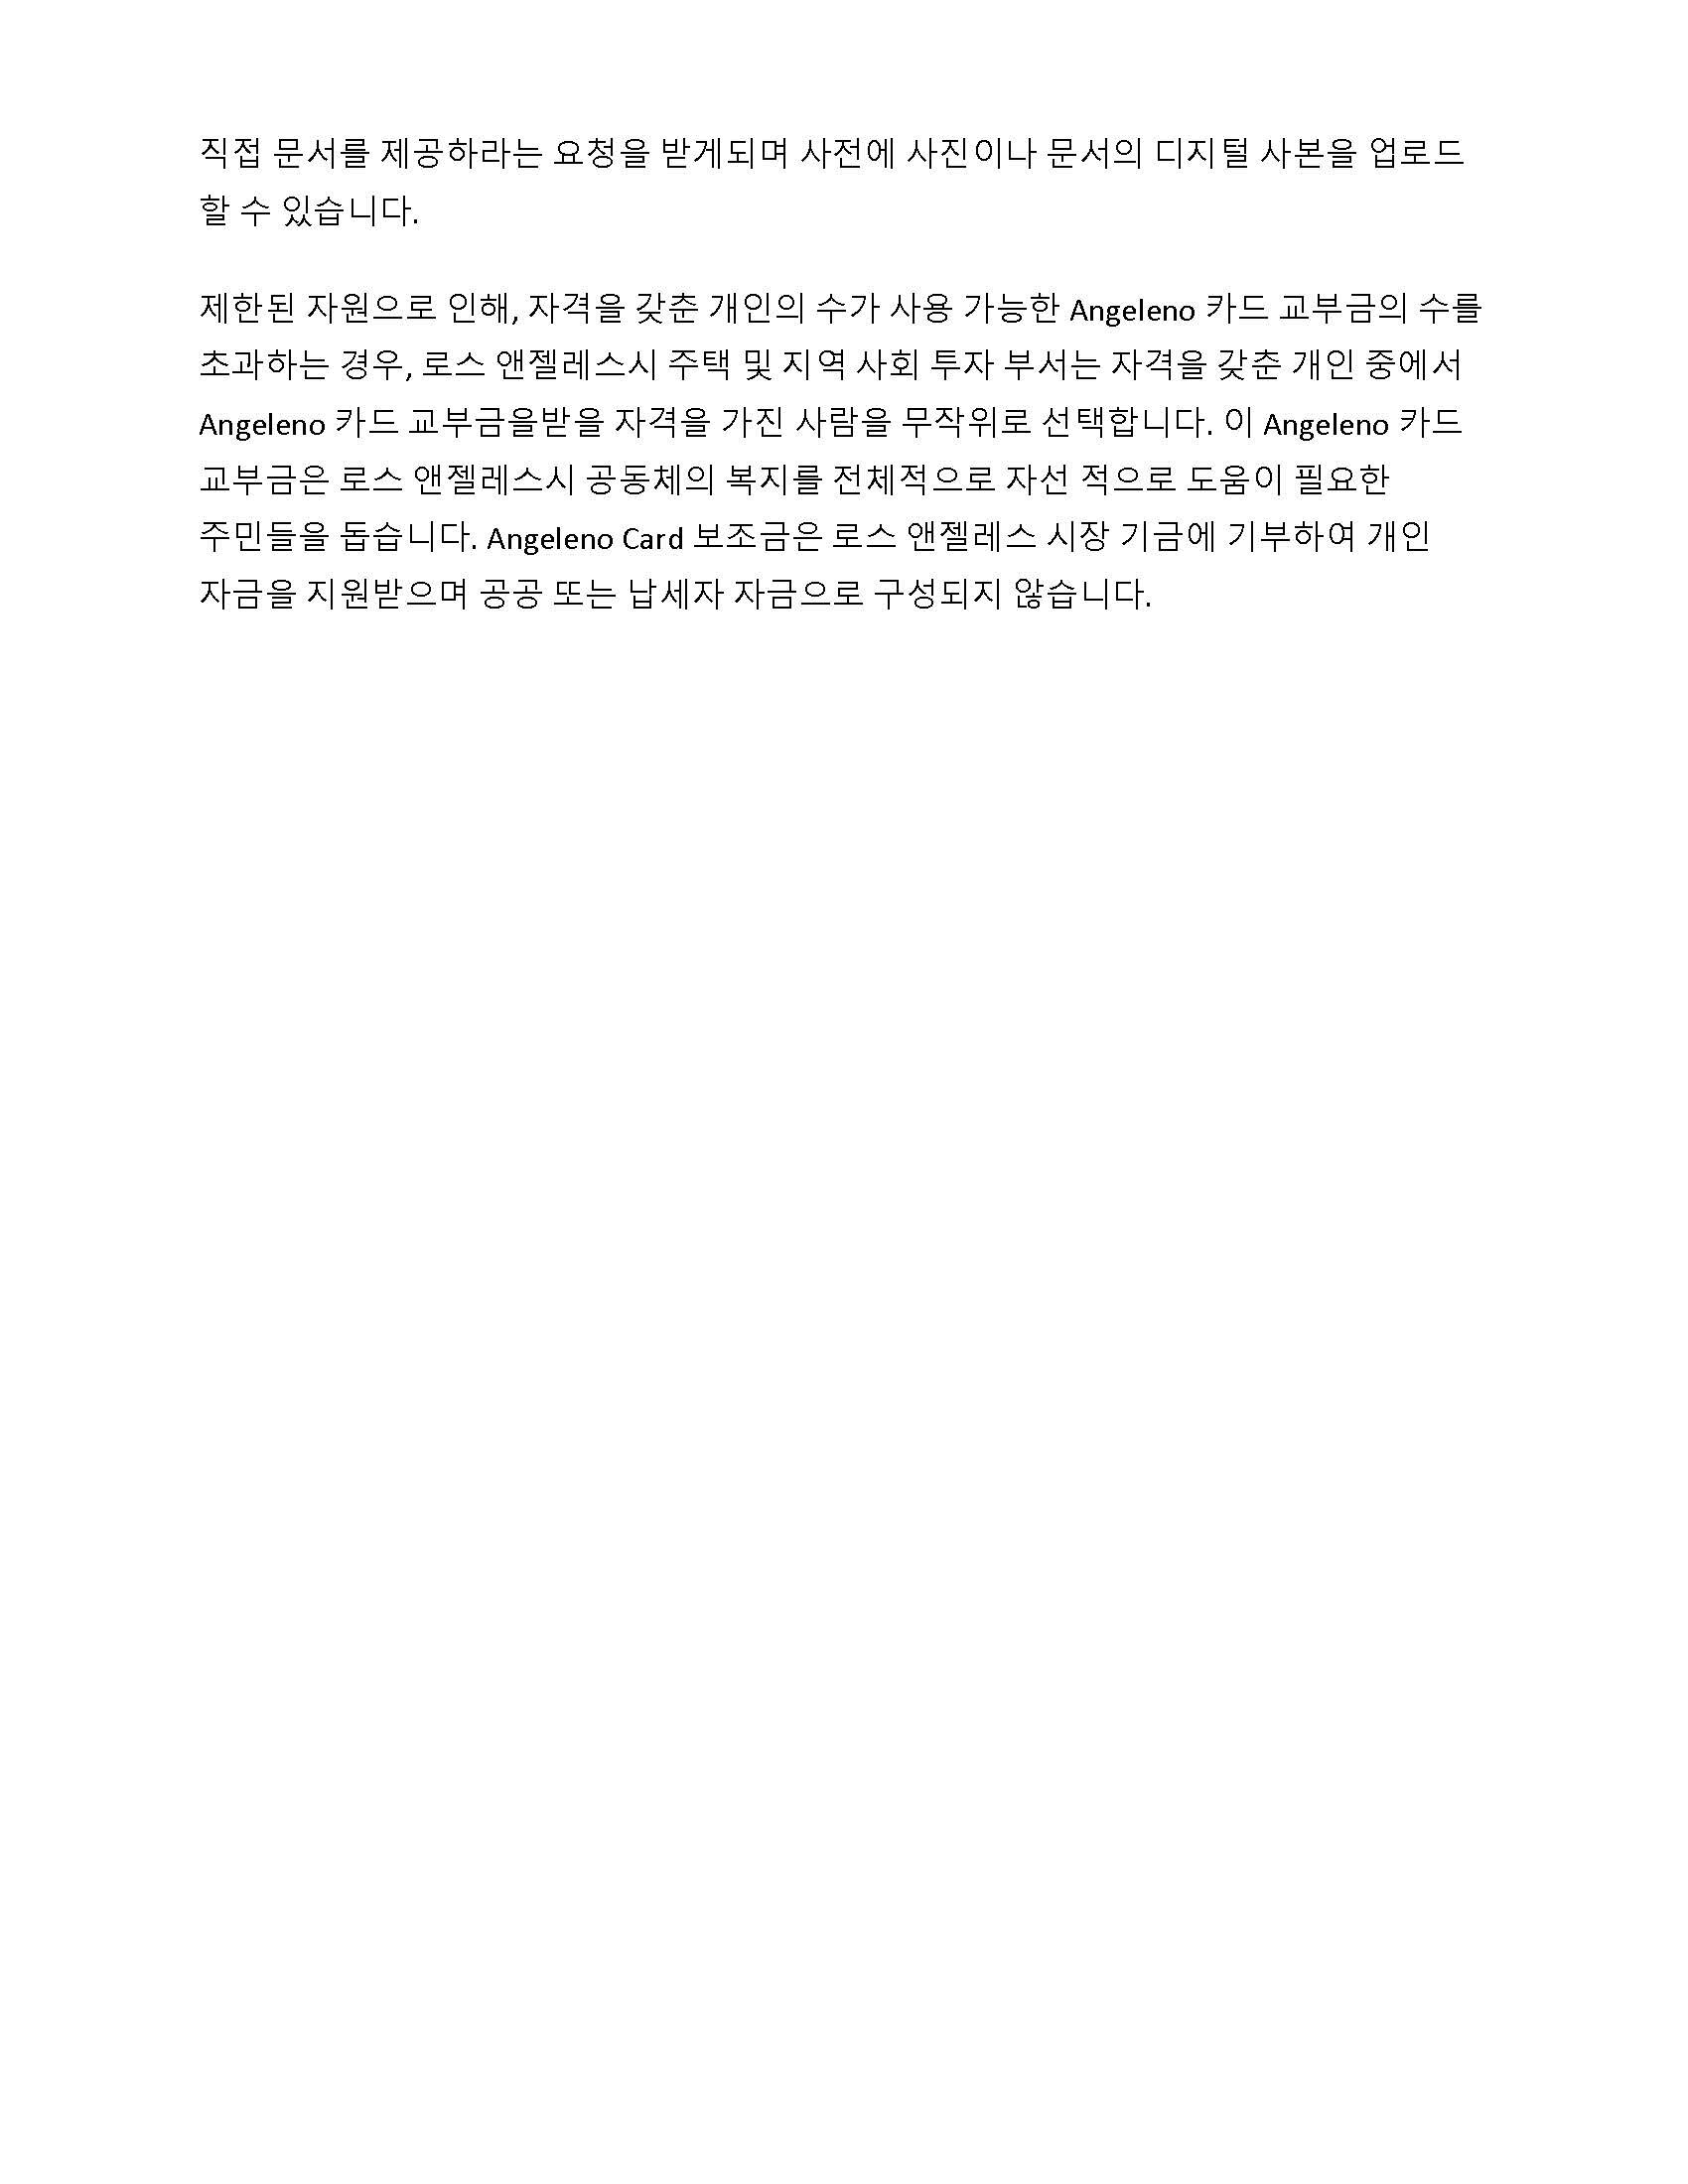 Angeleno Fund Korean_Page_4.jpg